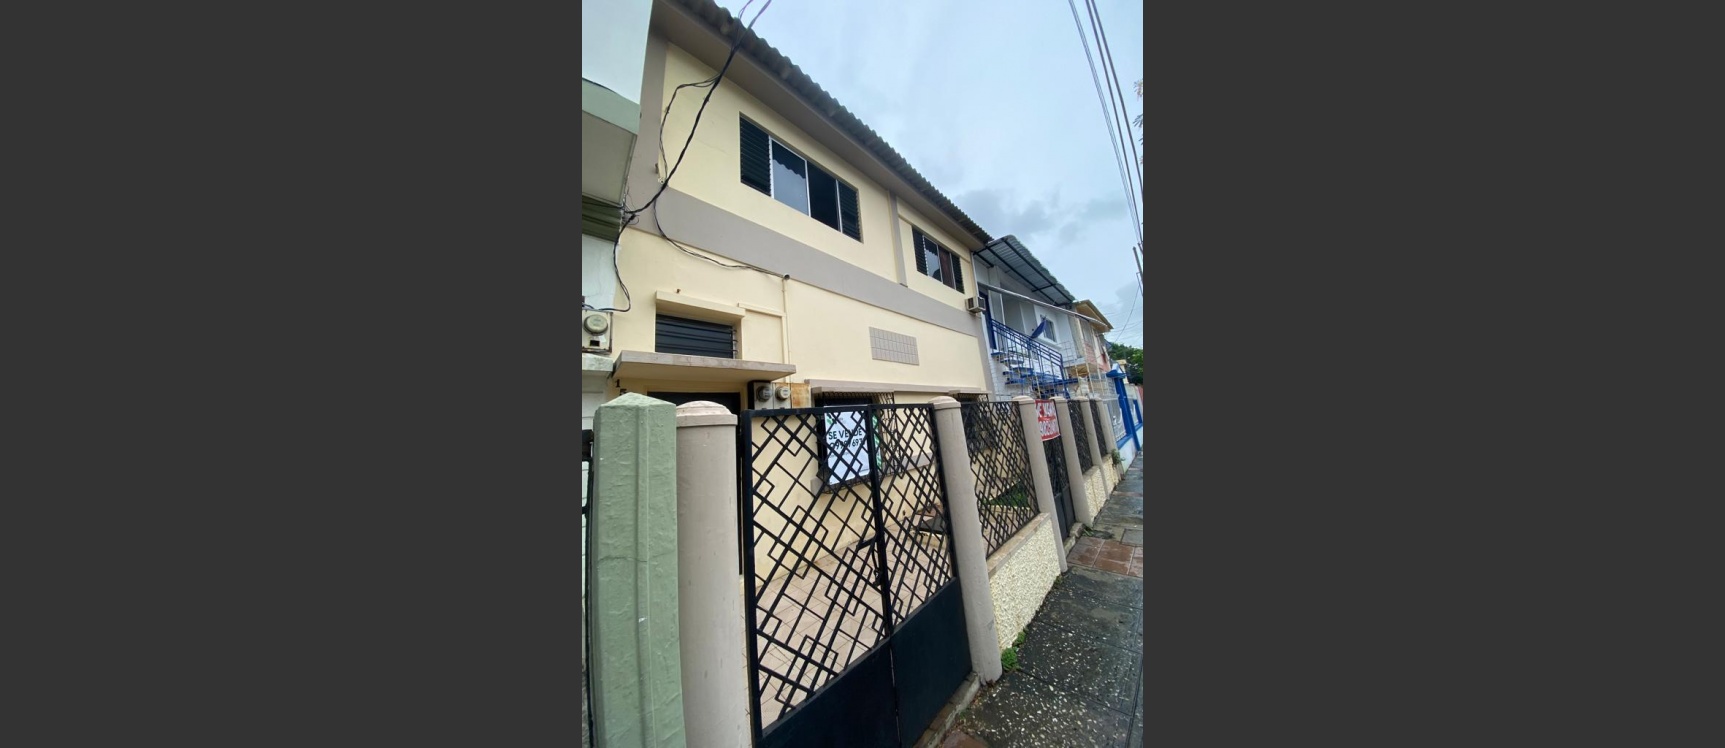 GeoBienes - Casa en venta ubicada en el Barrio Orellana, Centro de Guayaquil - Plusvalia Guayaquil Casas de venta y alquiler Inmobiliaria Ecuador